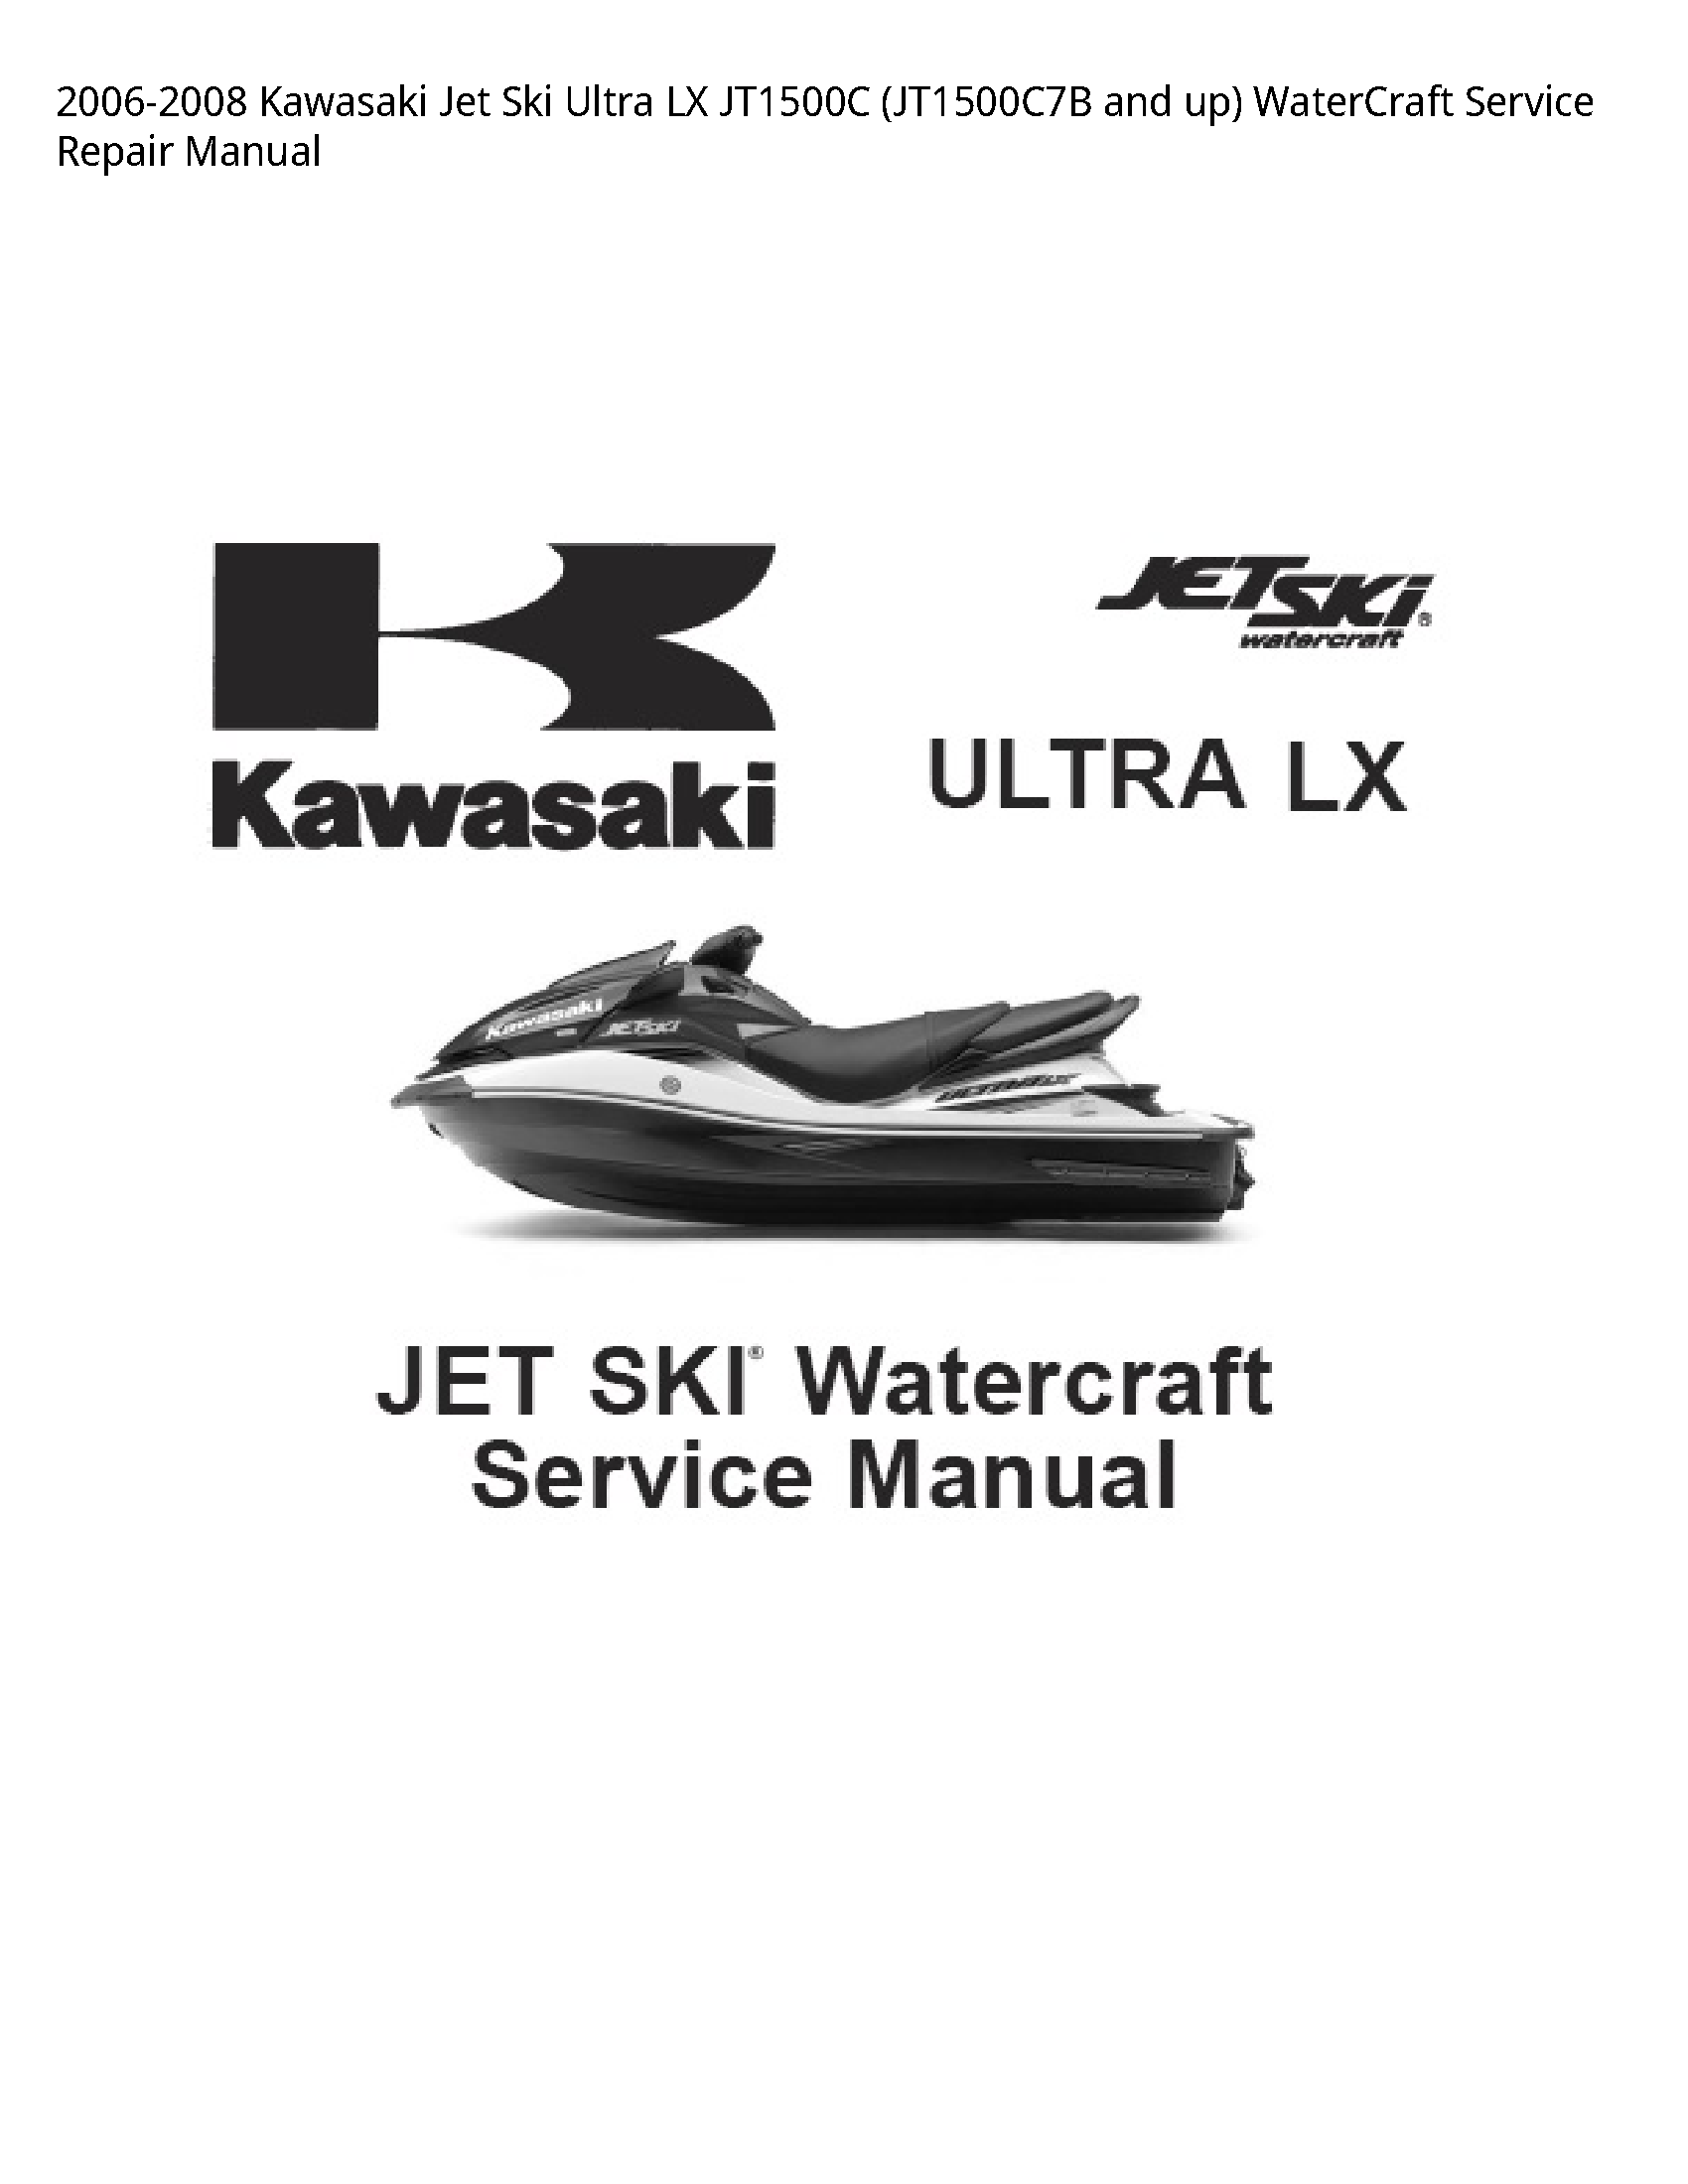 Kawasaki JT1500C Jet Ski Ultra LX  up) WaterCraft manual